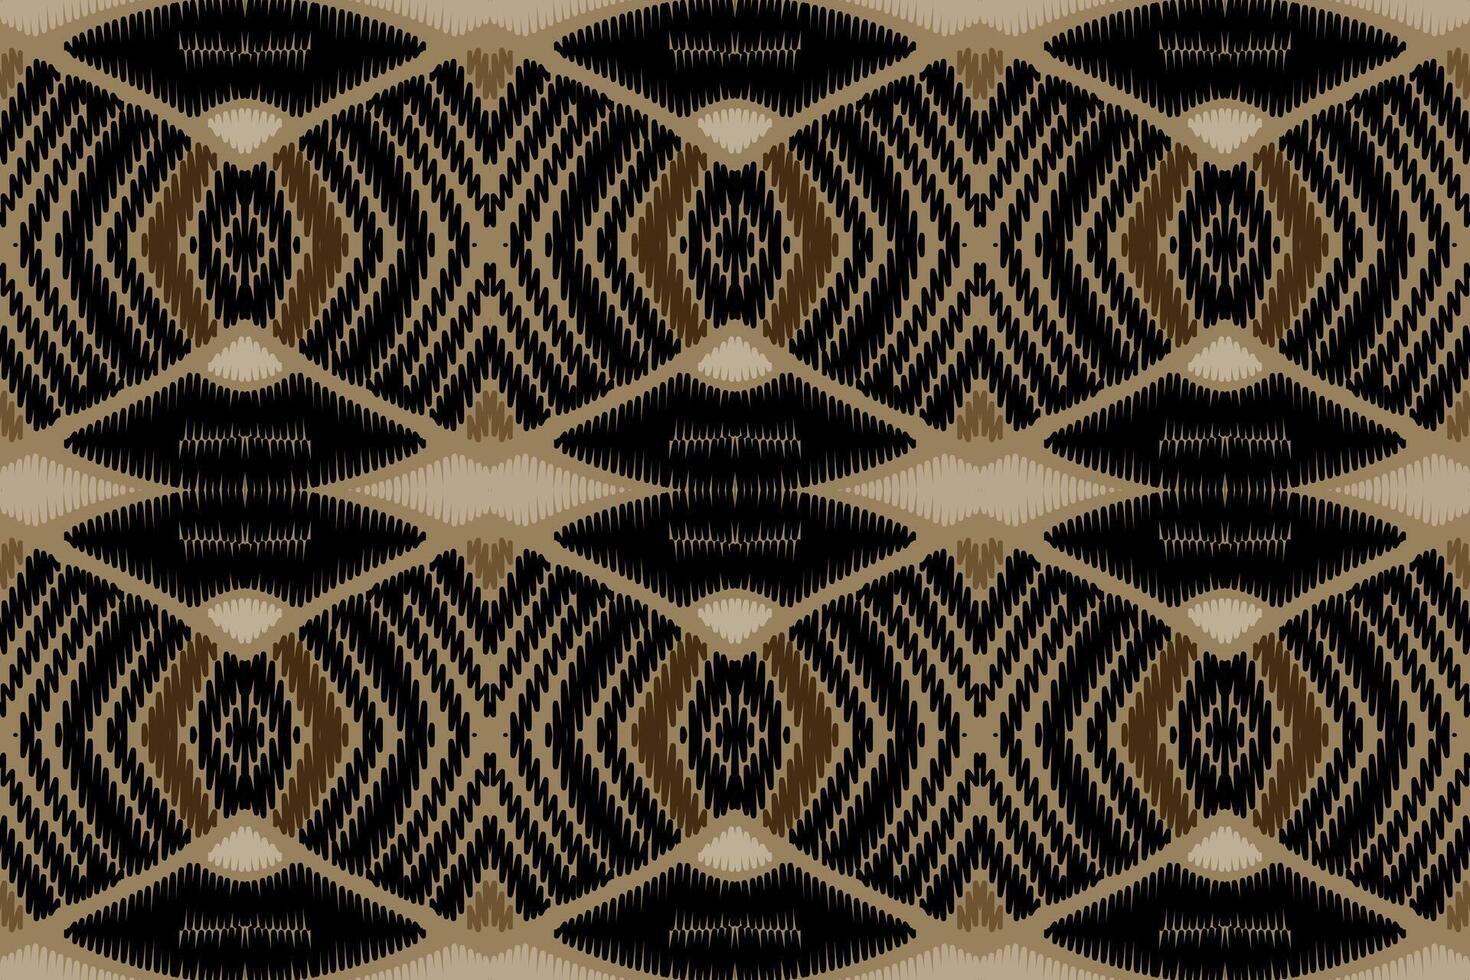 ikat abstraktes geometrisches ethnisches musterdesign der stickerei. aztekischer Stoff Teppich Mandala Ornament Chevron Textildekoration Tapete. tribal boho einheimischer ethnischer türkei traditioneller vektorhintergrund vektor